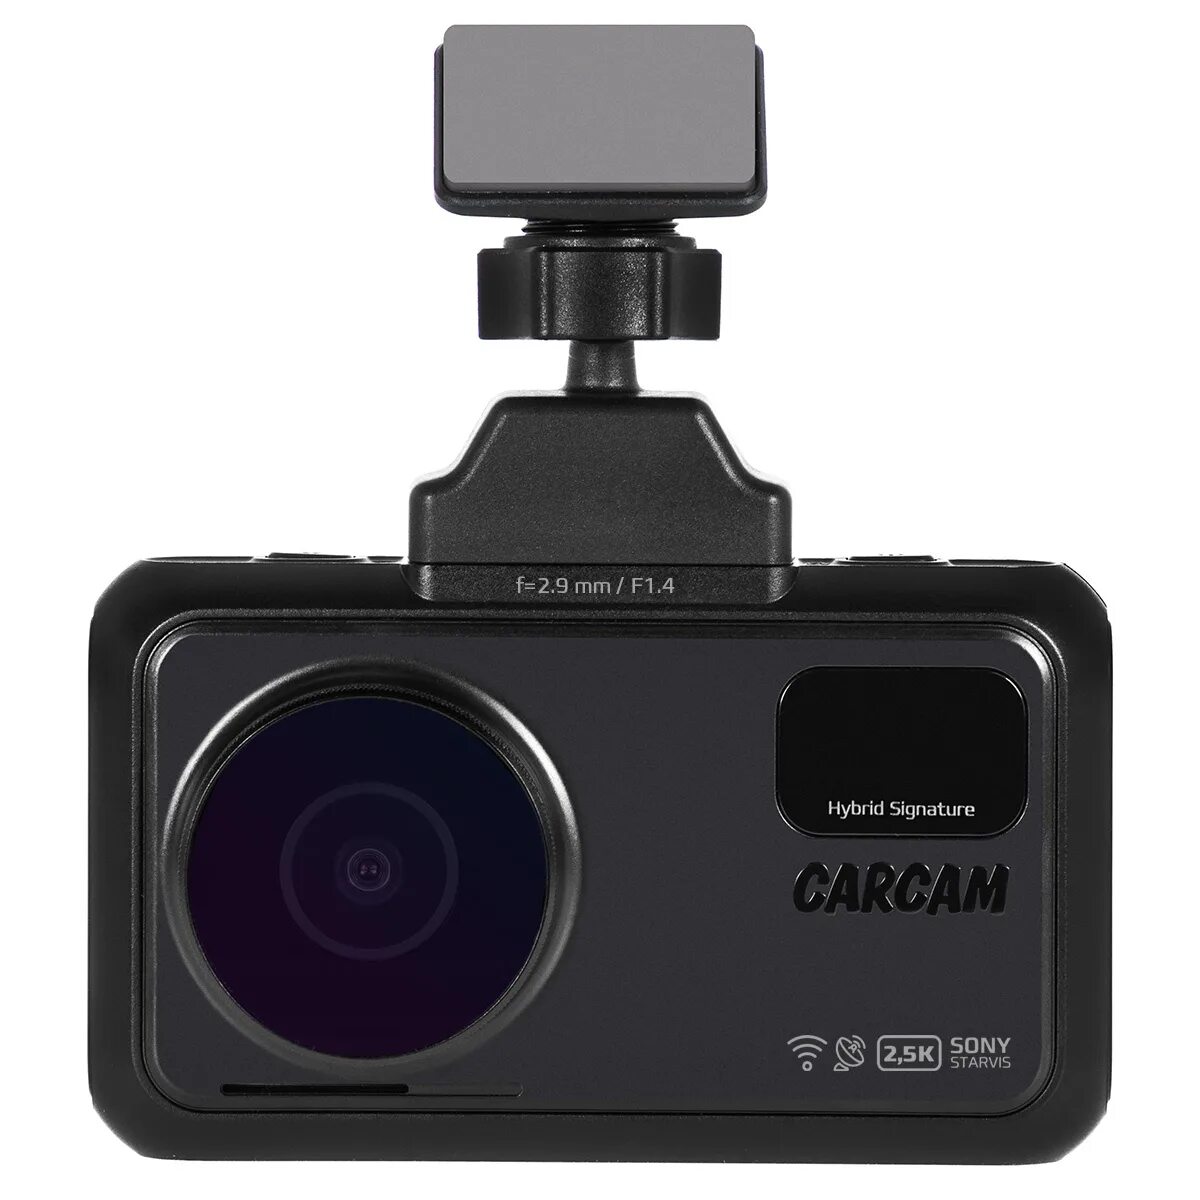 Купить видеорегистратор каркам. Carcam Hybrid 2 Signature. Carcam Hybrid 3s Signature. Видеорегистратор carcam Hybrid. Carcam Hybrid 2 Signature - видеорегистратор с радар-детектором.